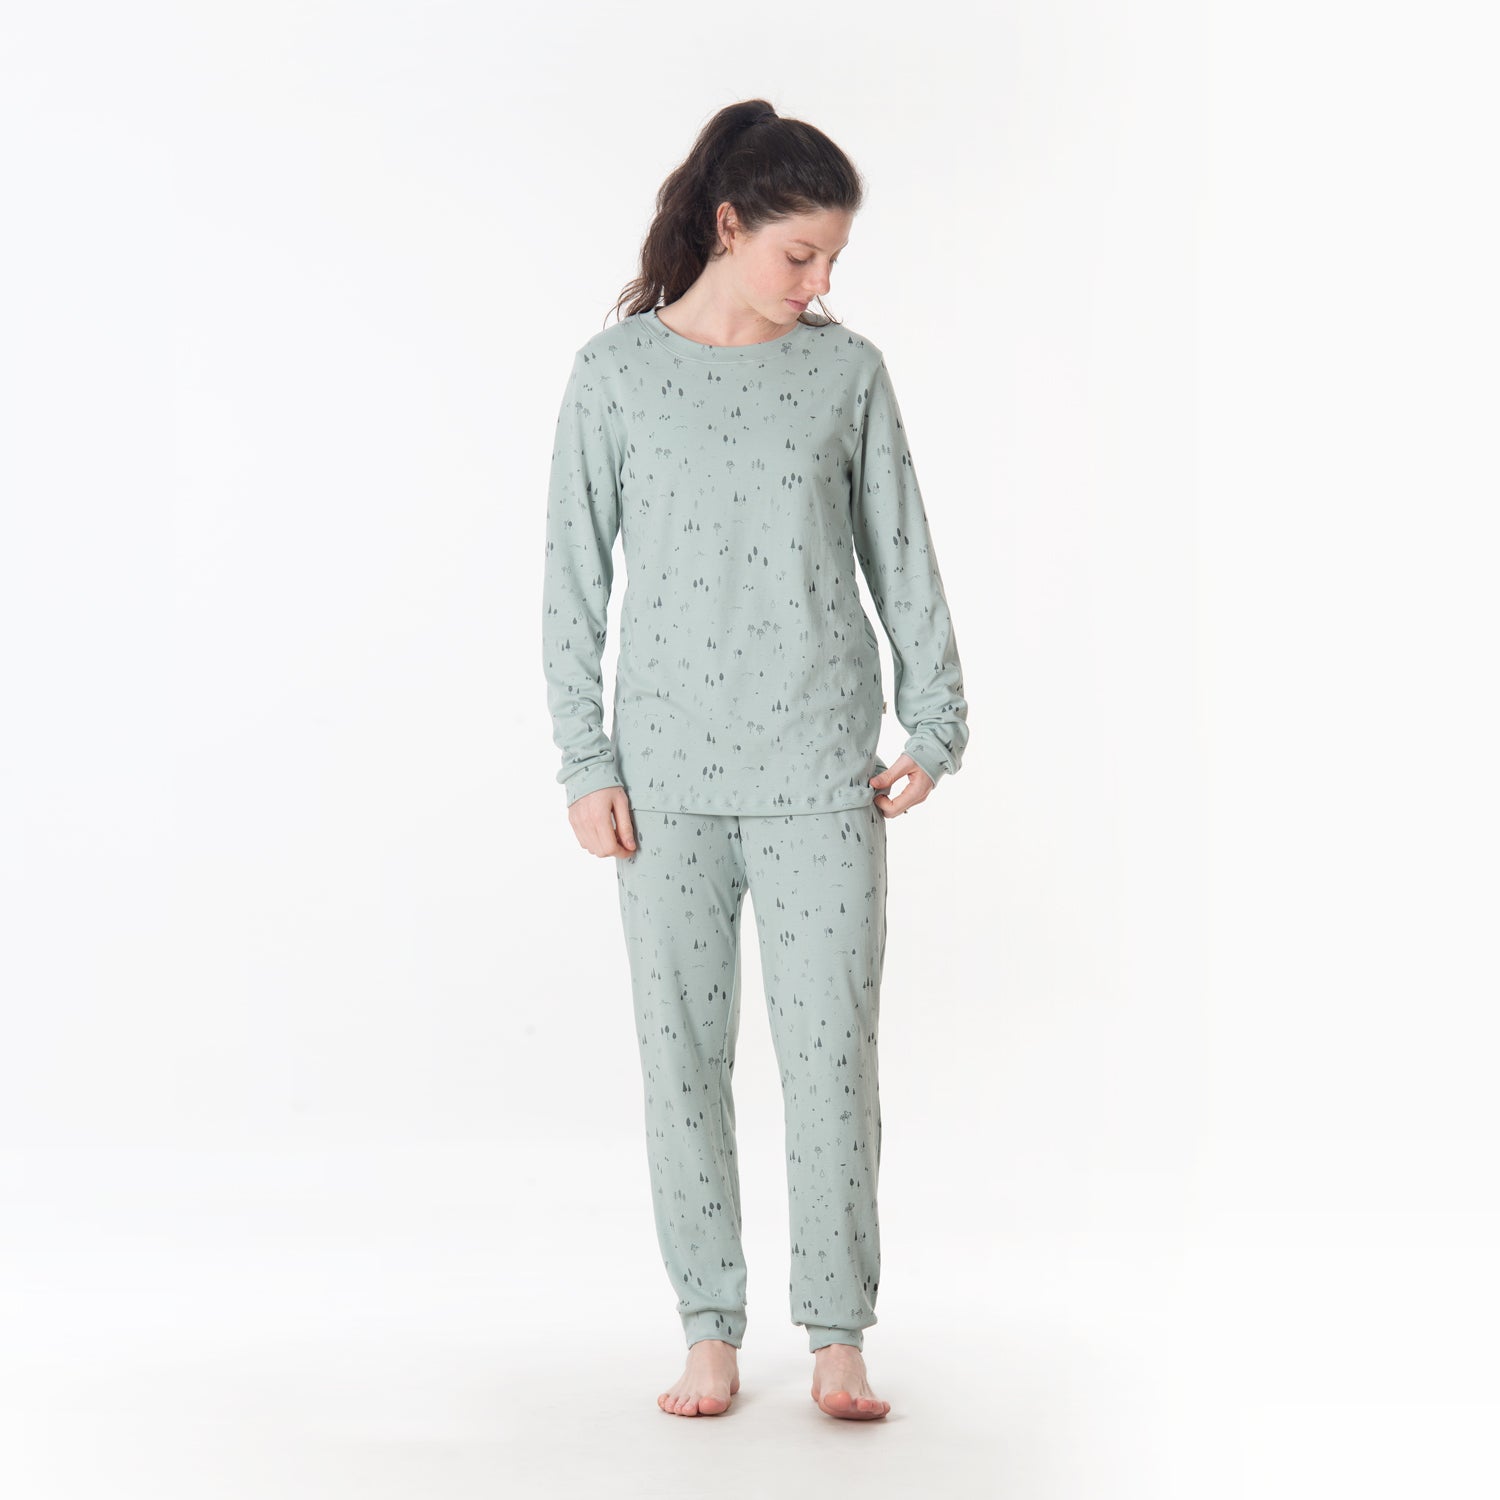 'the woods' gray mist pajamas